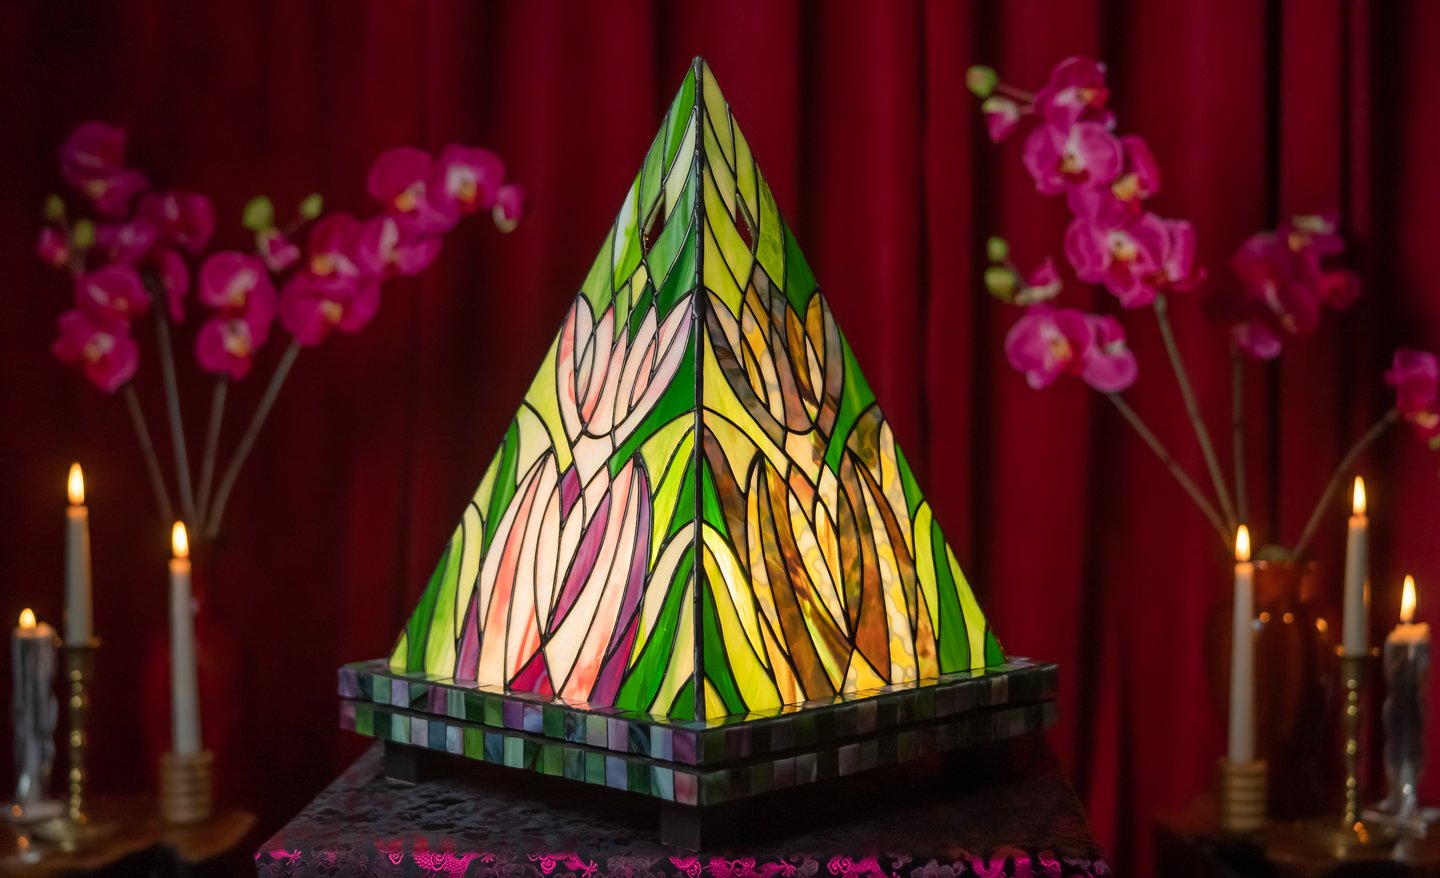 ALEXA-WRIGHT-Artist-Designer-Mantis-Stained-Glass-Lamp-03324.jpg